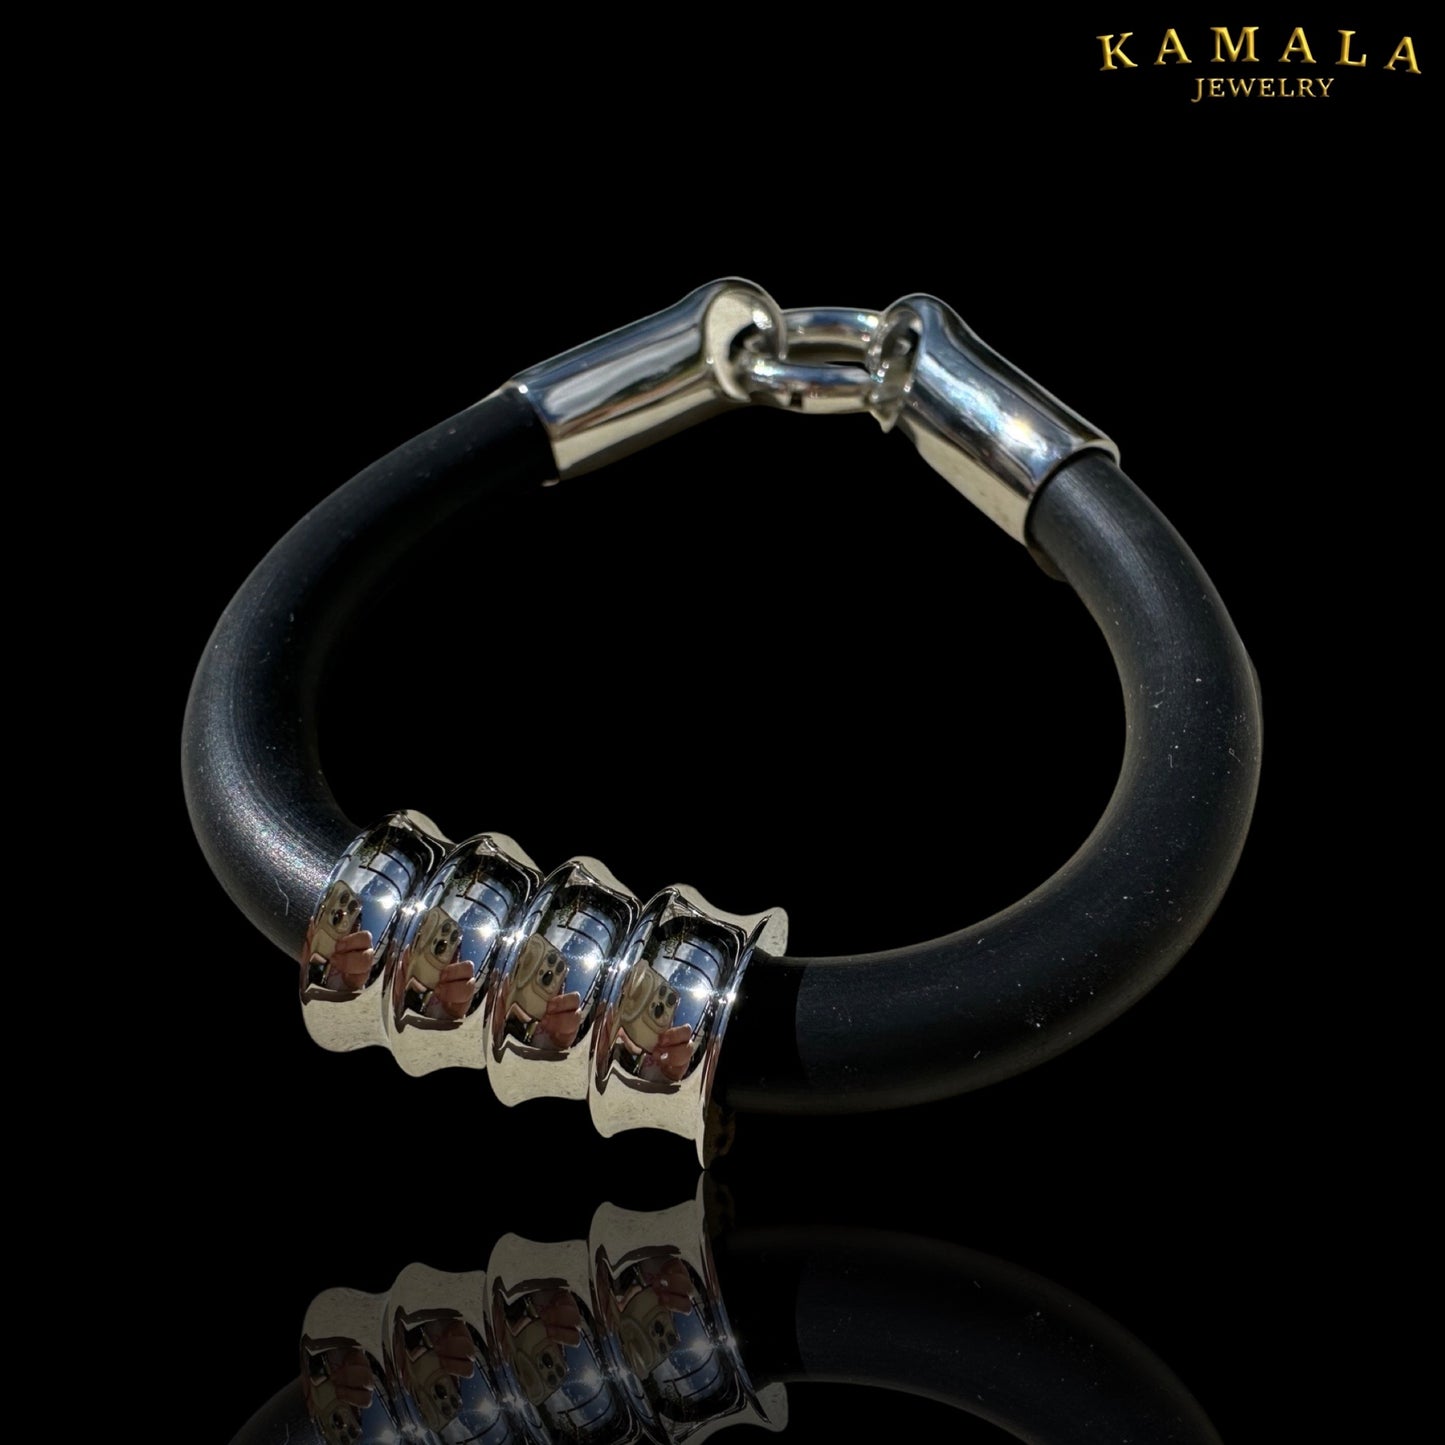 Kautschuk Armband  - Schwarz Silber